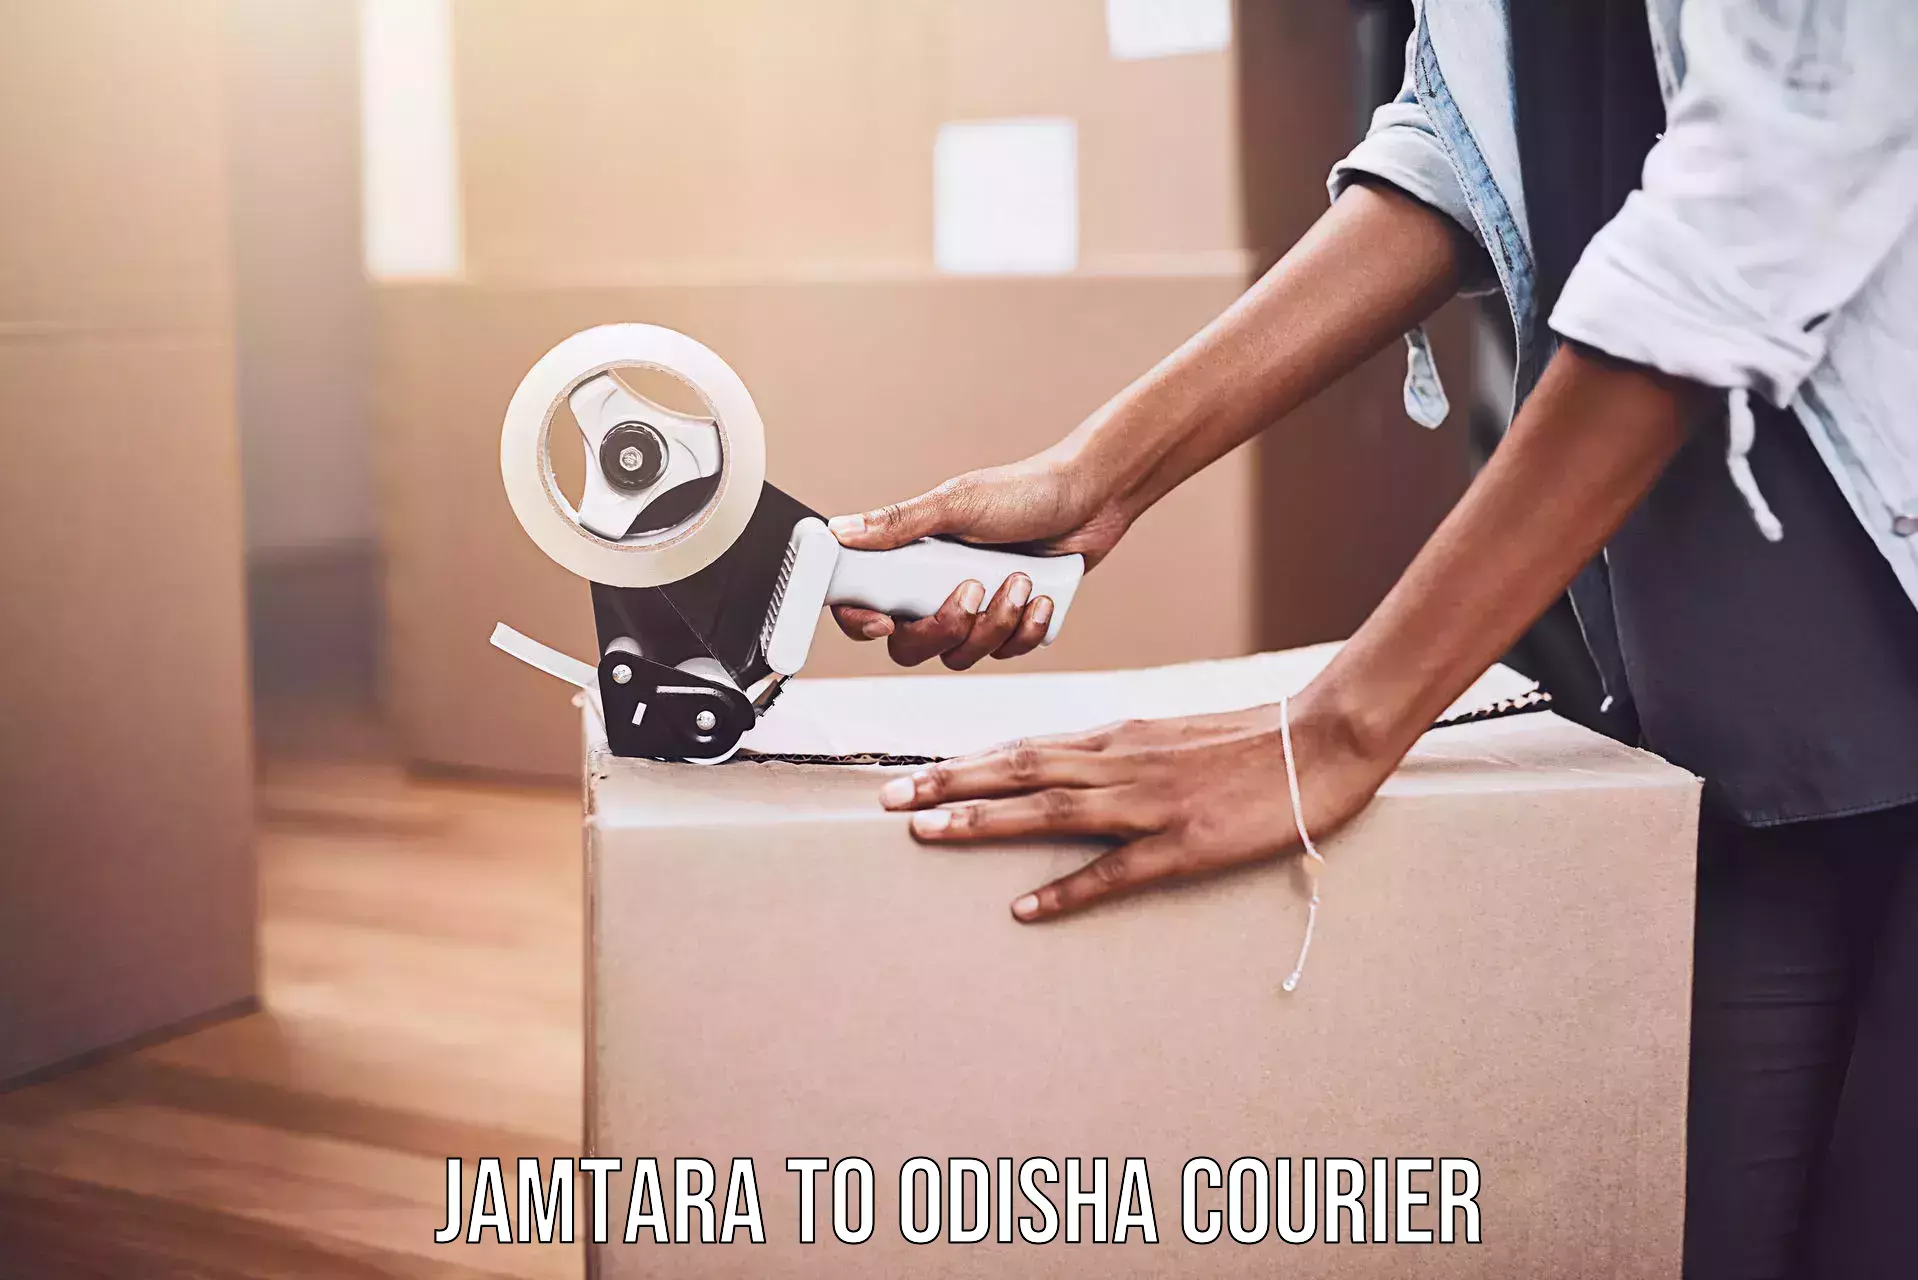 Digital courier platforms Jamtara to Paralakhemundi